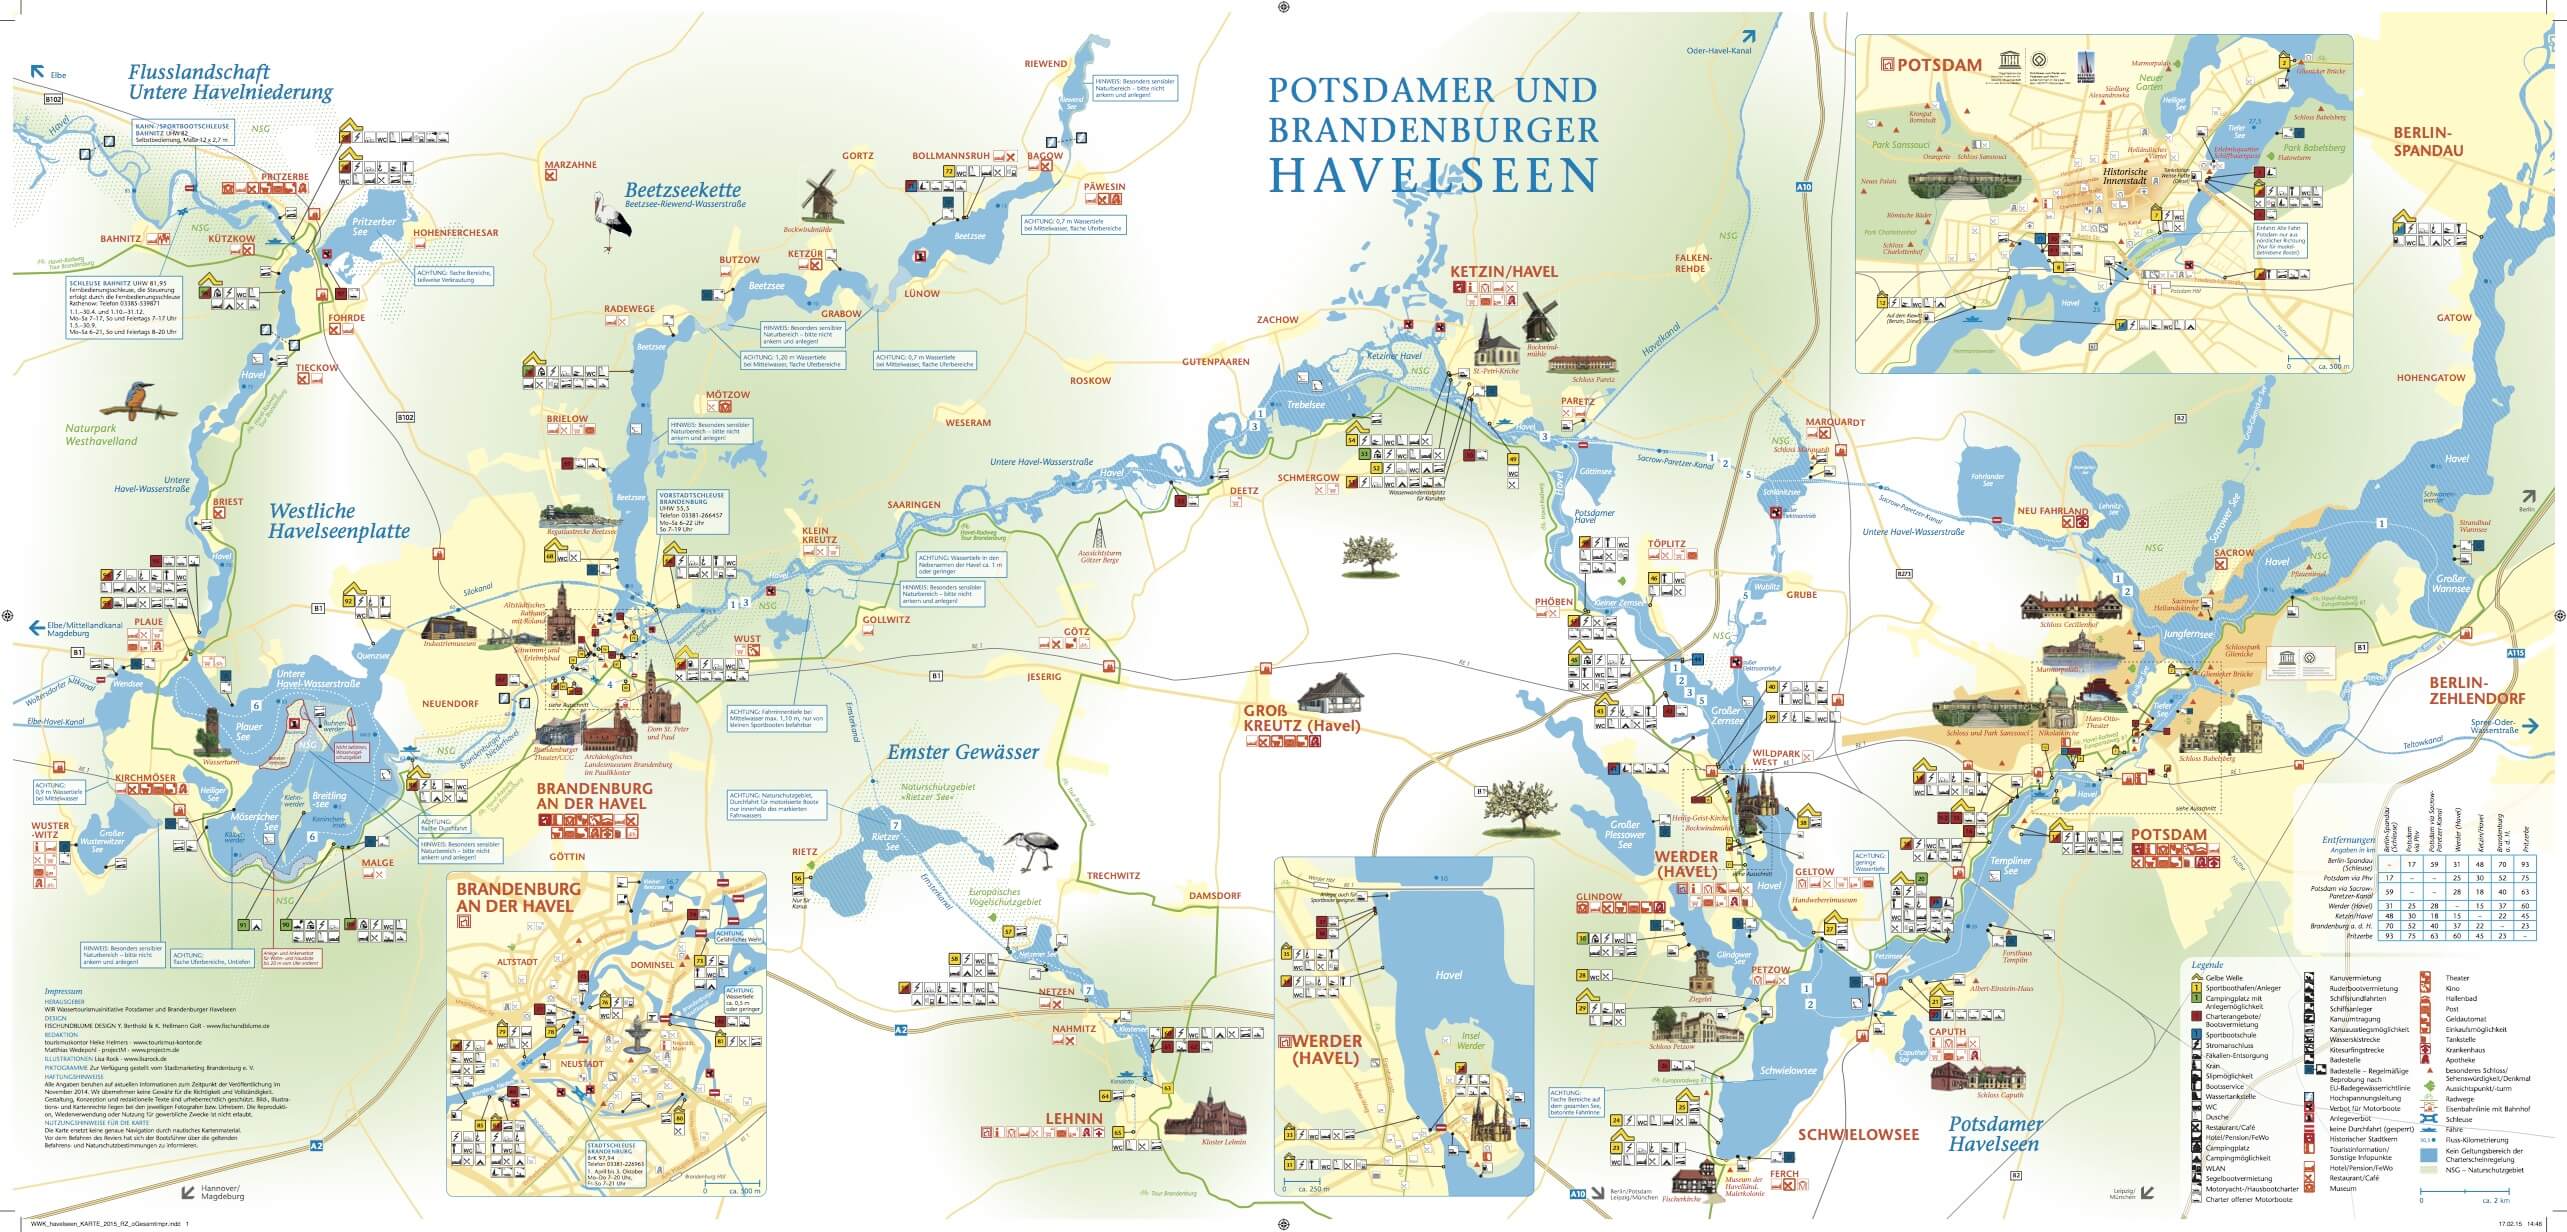 Laden Sie hier die Wasserwanderkarte der Potsdamer- und Brandenburger Havelseen als PDF Datei herunter.